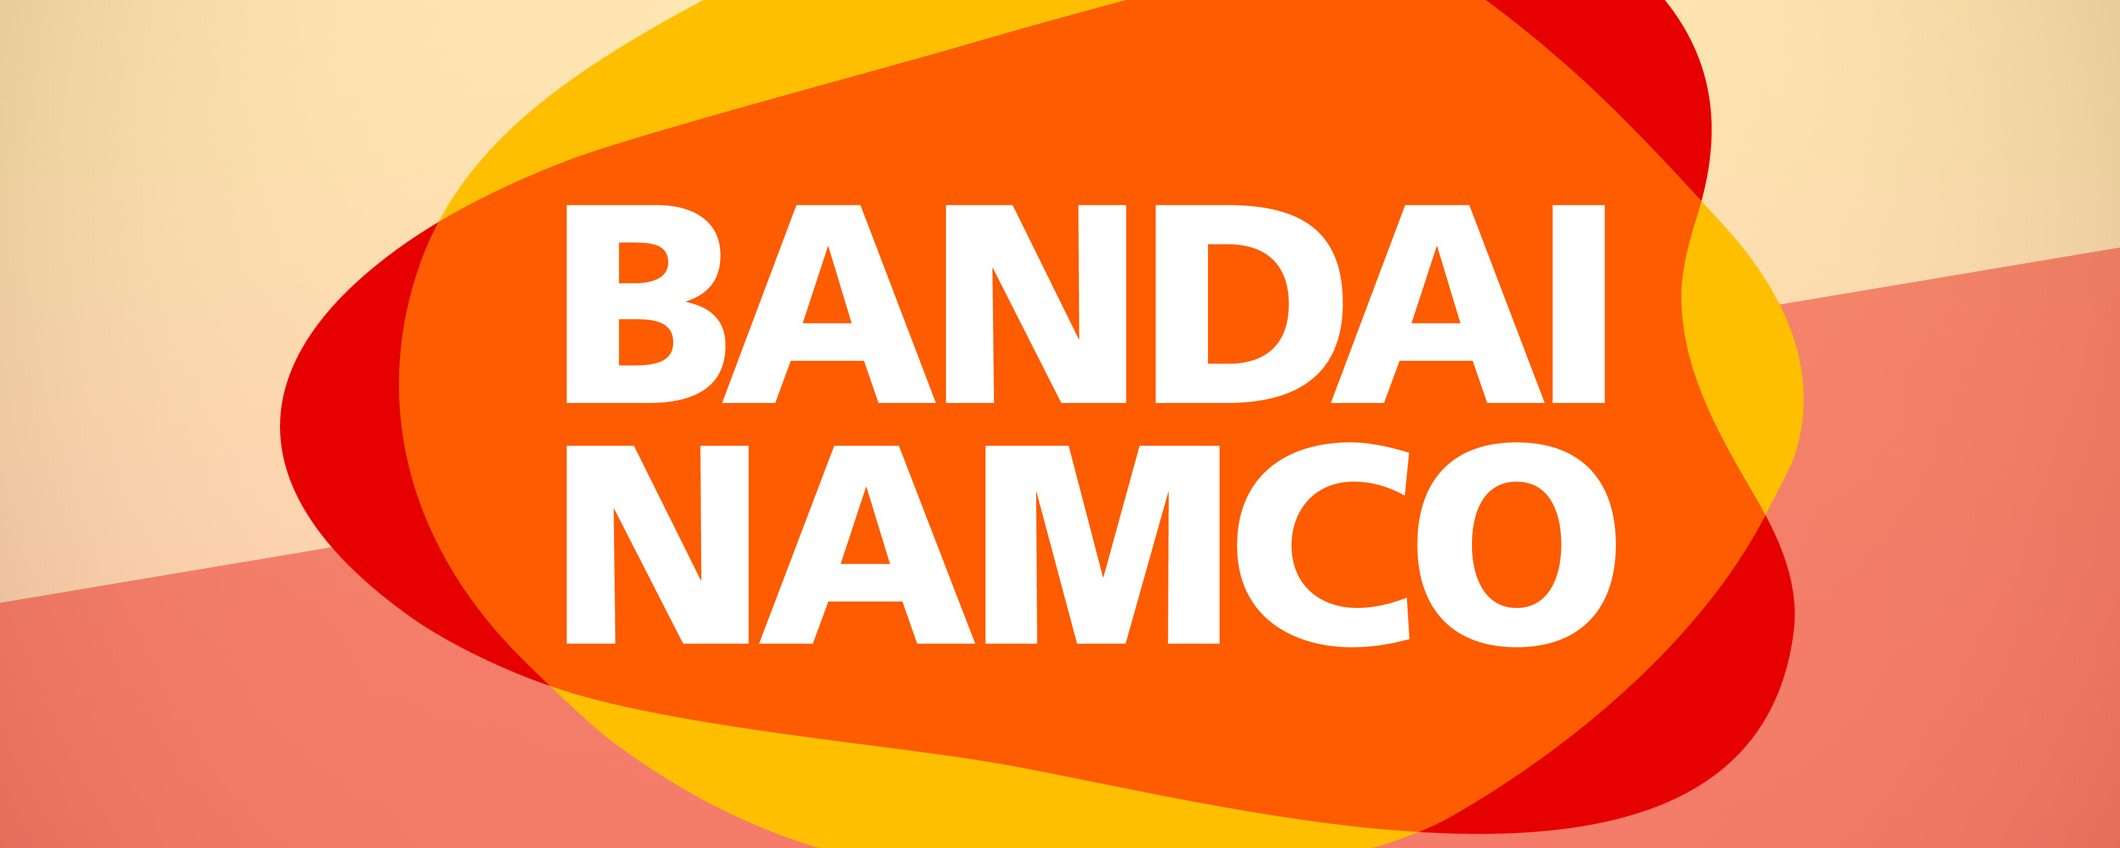 Bandai Namco (Elden Ring) conferma il data breach